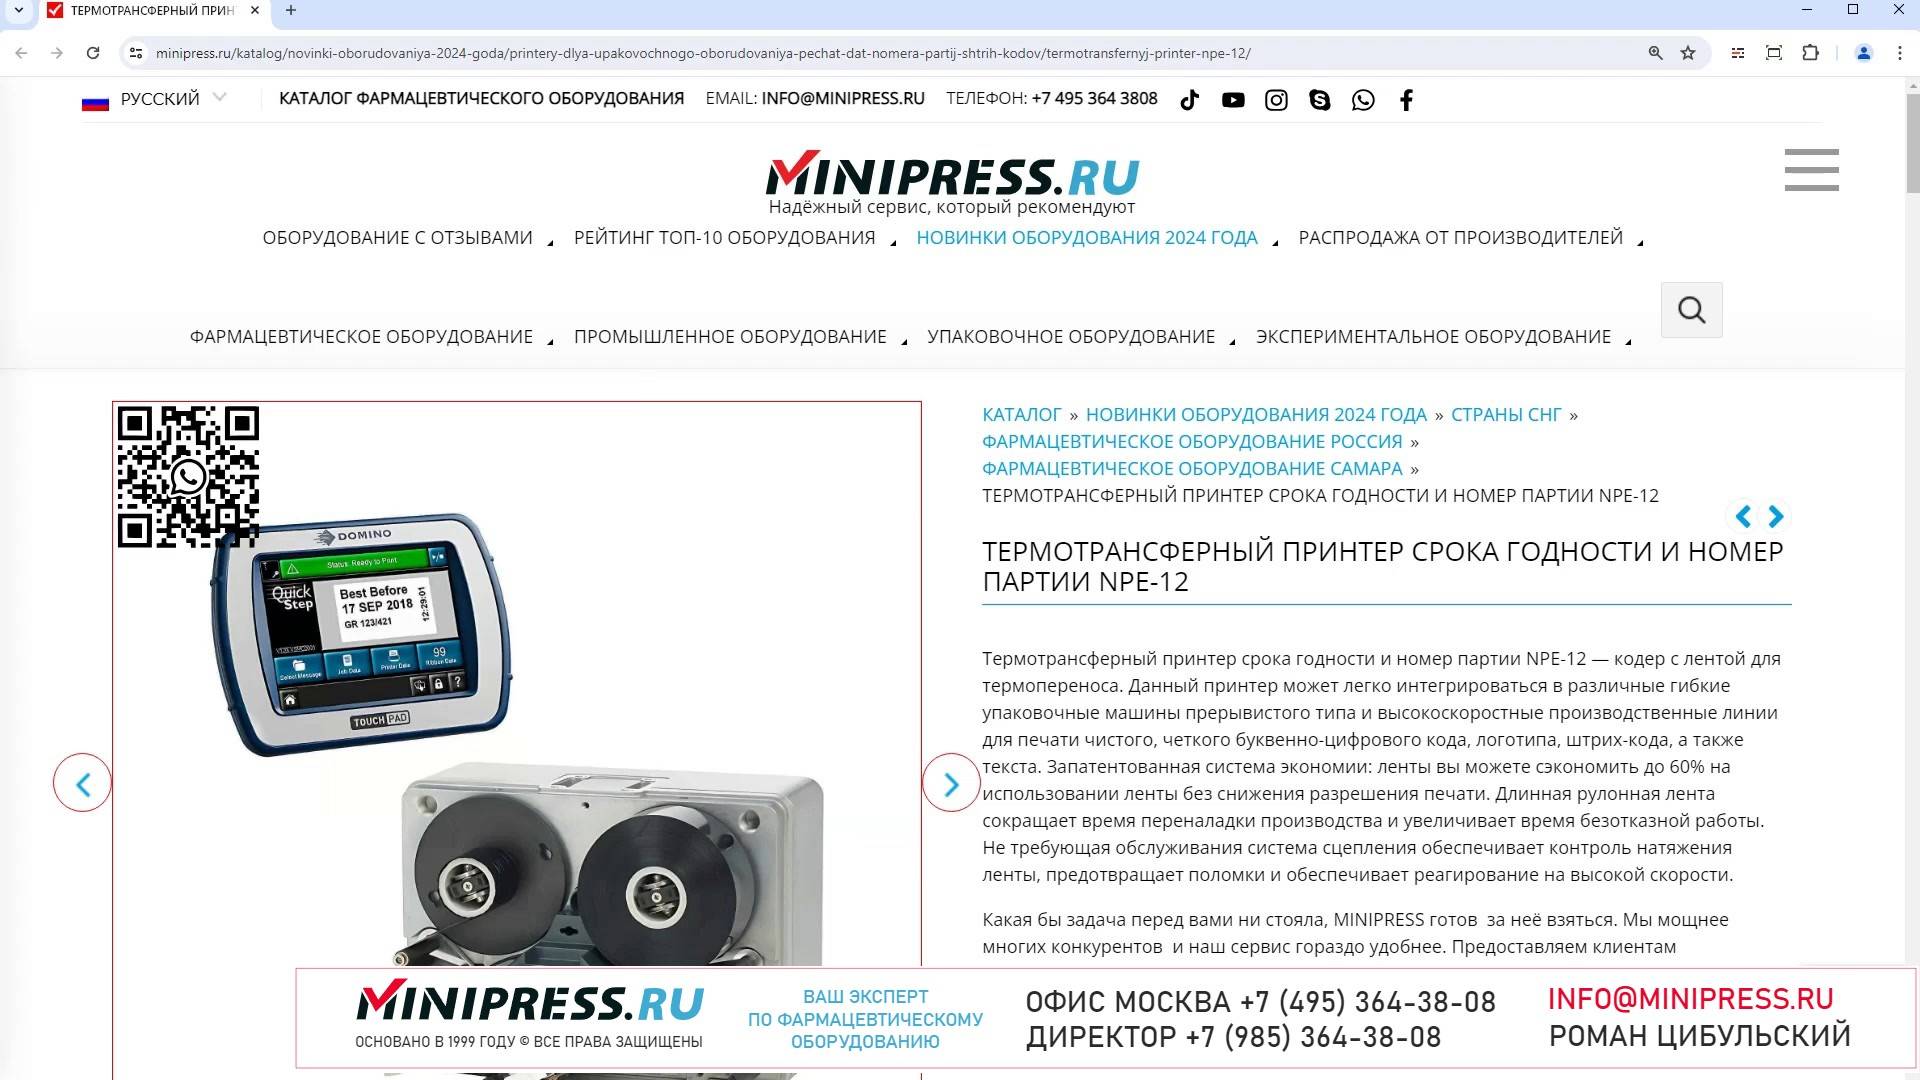 Minipress.ru Термотрансферный принтер срока годности и номер партии NPE-12